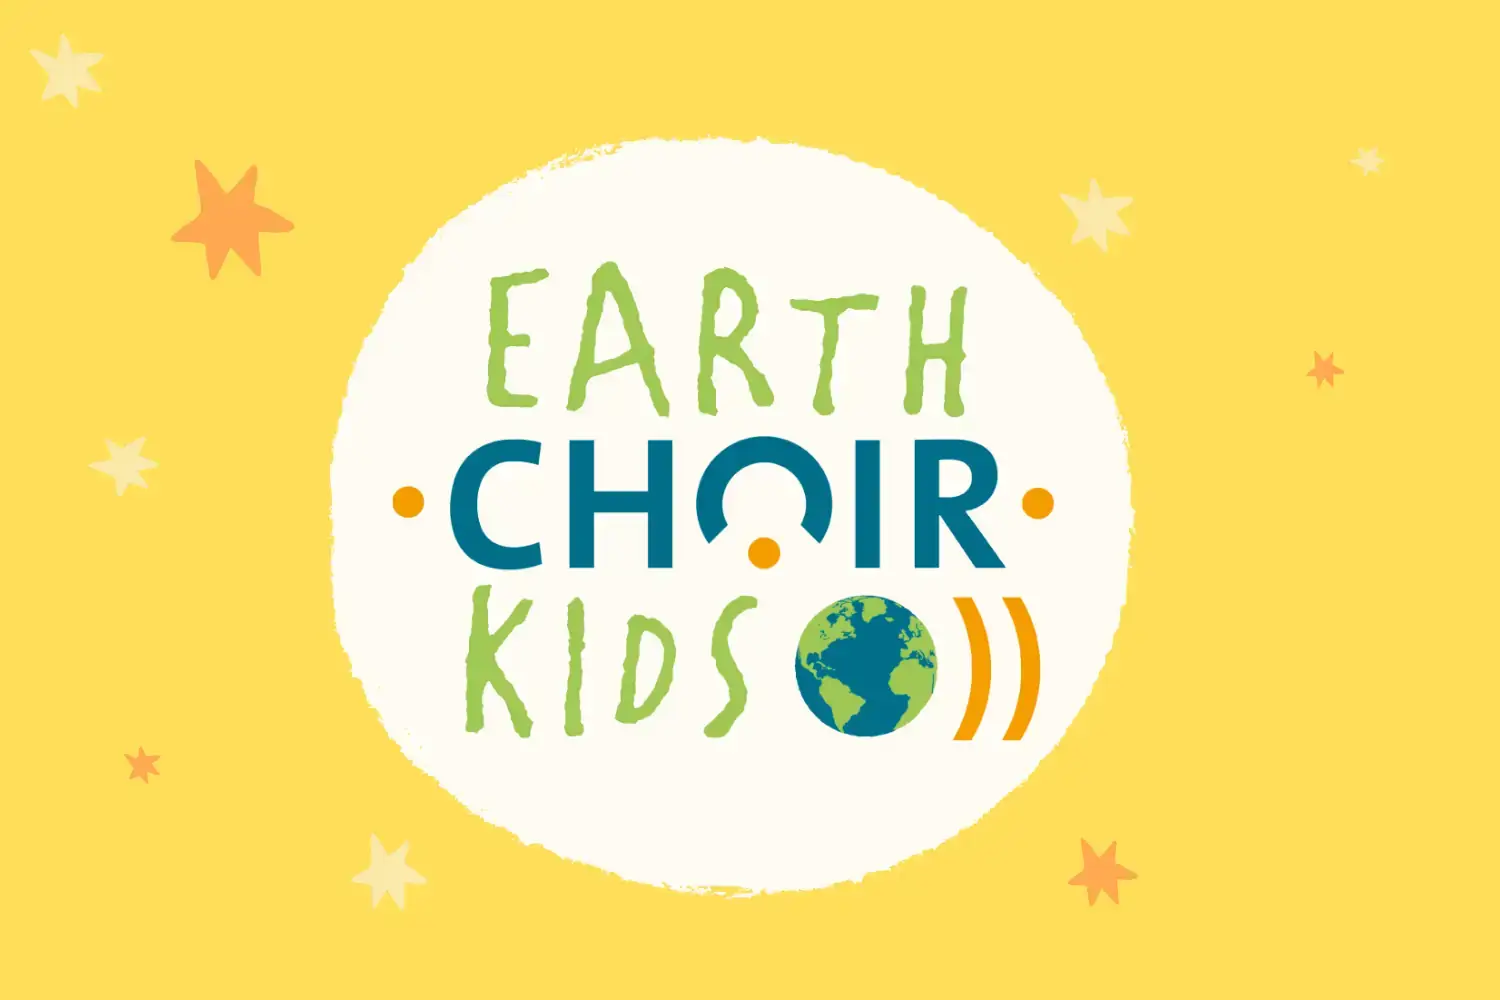 Earth Choir Kids